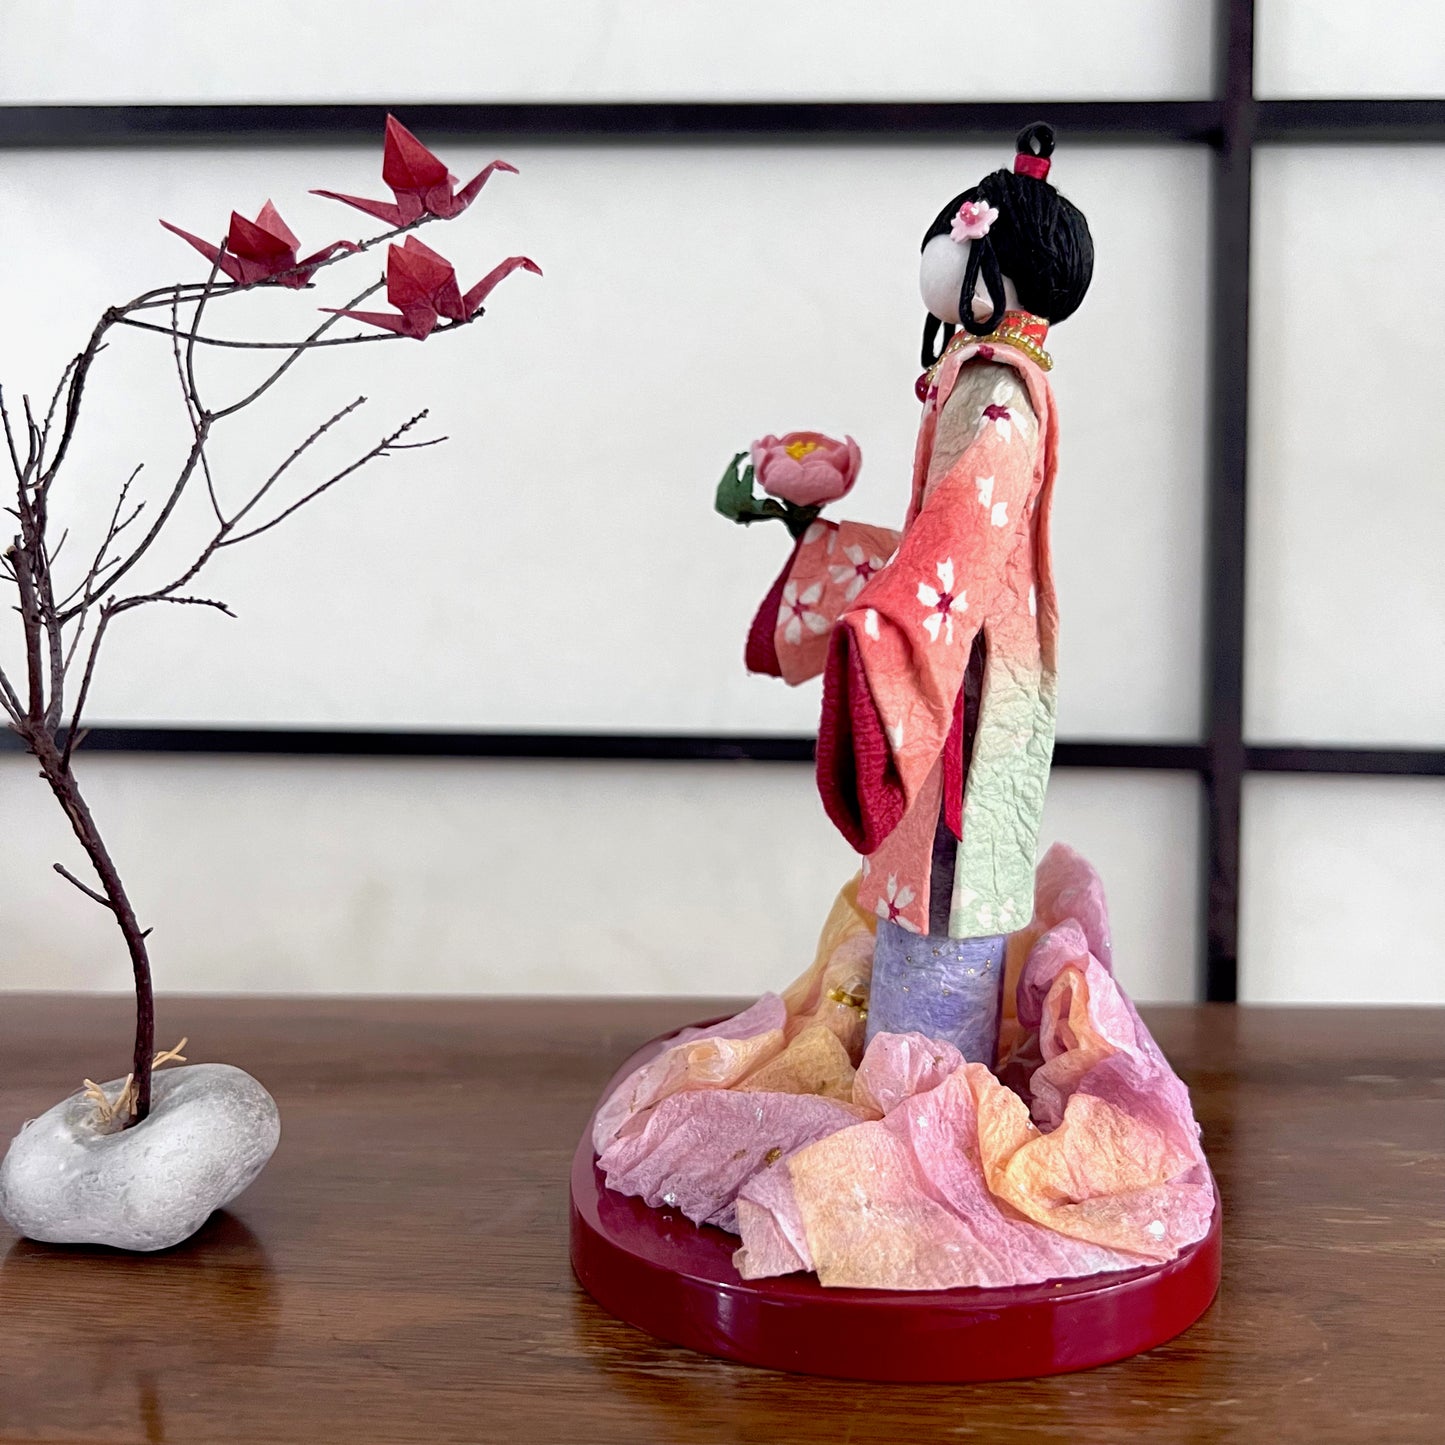 poupée japonaise en papier Yuzen Washi, ( Washi Doll)au kimono fleurs de cerisier tenant une pivoine rose dans la main, vu du côté gauche